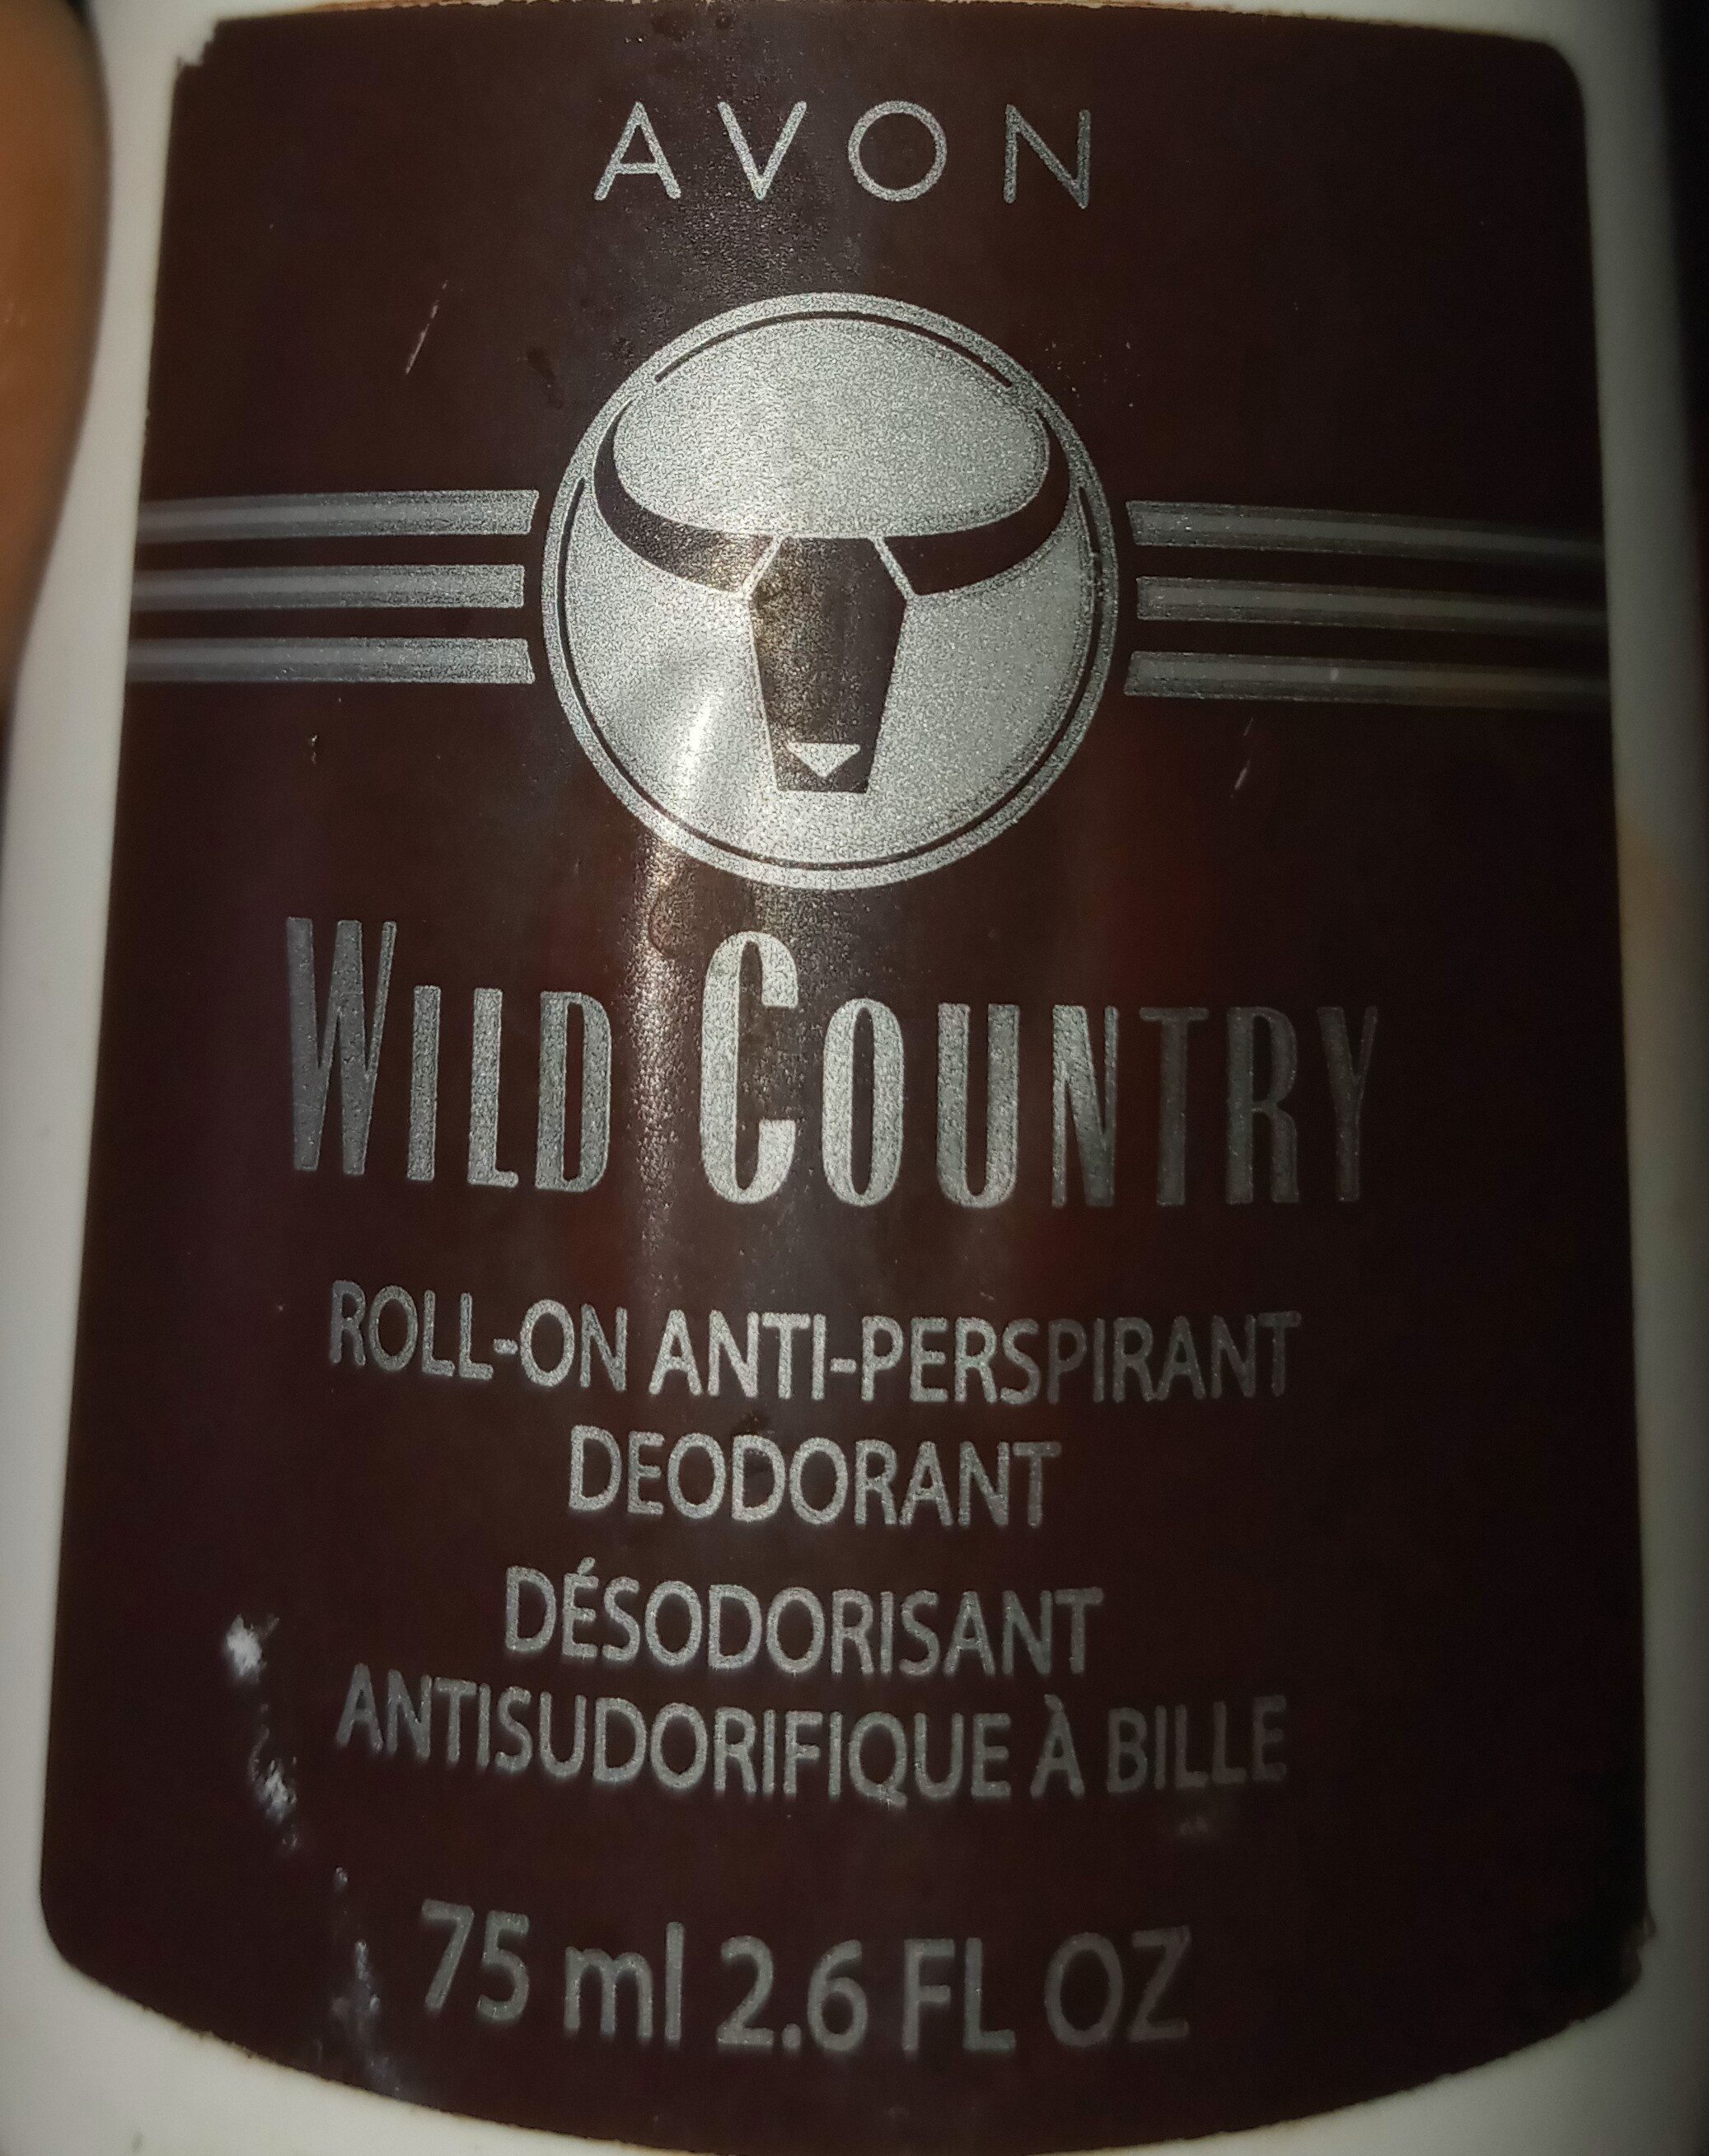 Wild country, roll-on deodorant - Inhaltsstoffe - en